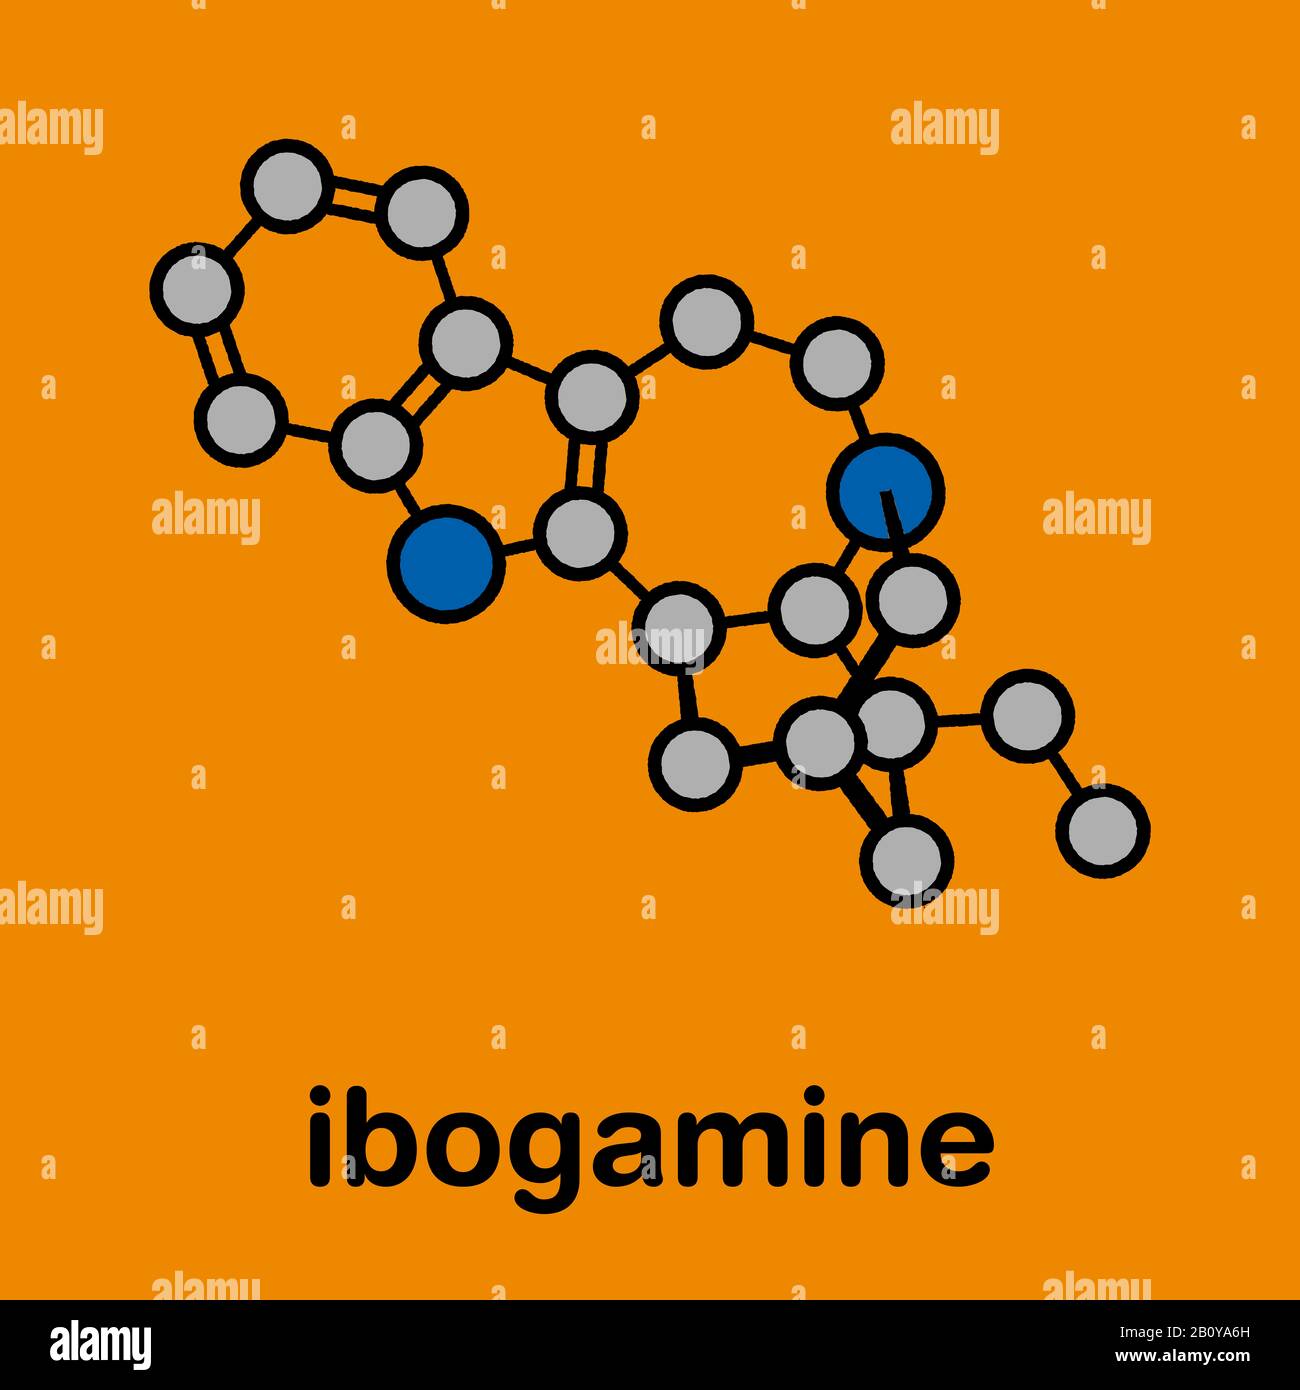 Ibogamine alkaloid molecule, illustration Stock Photo